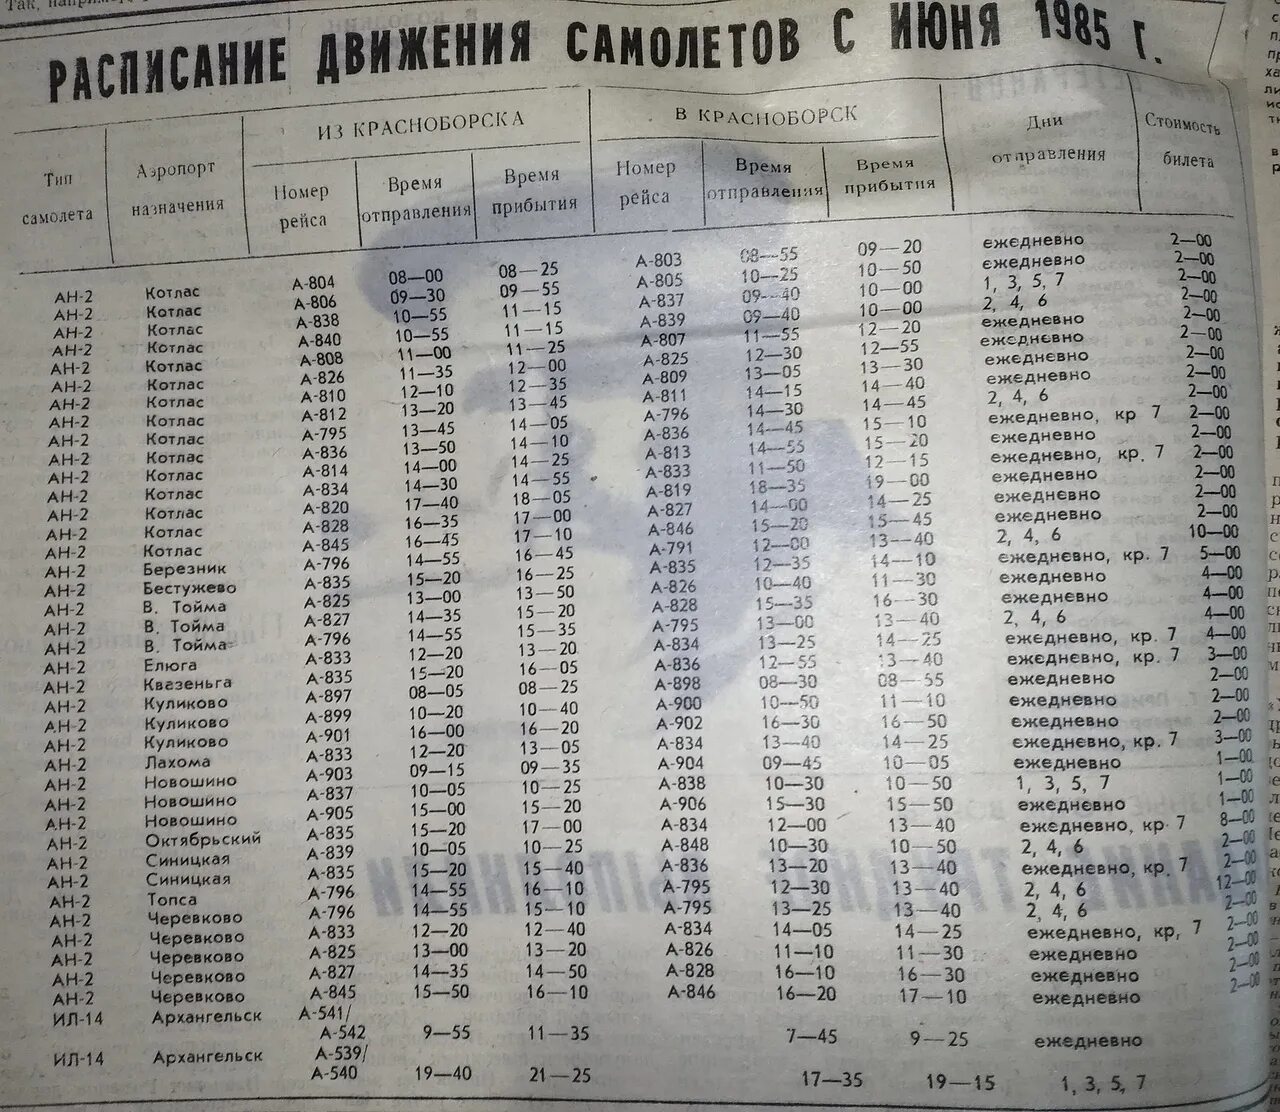 Расписание самолетов саранск москва. Расписание самолетов 1980 года. График движения самолета. Расписание движения воздушных судов. Расписание Саранского аэропорта.